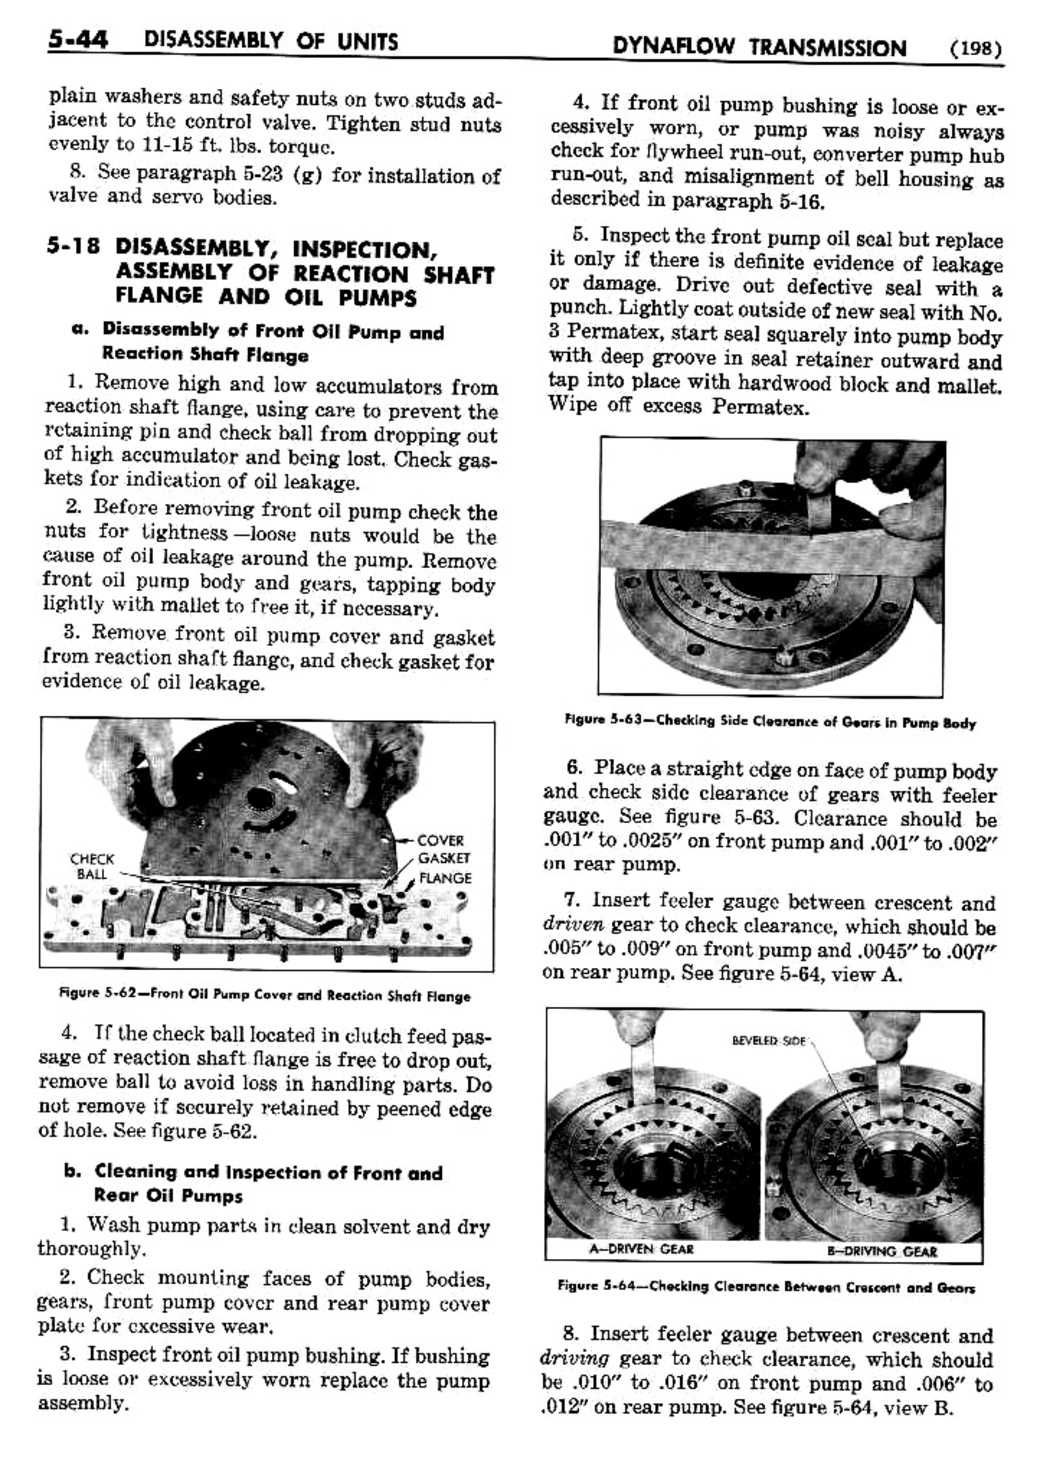 n_06 1954 Buick Shop Manual - Dynaflow-044-044.jpg